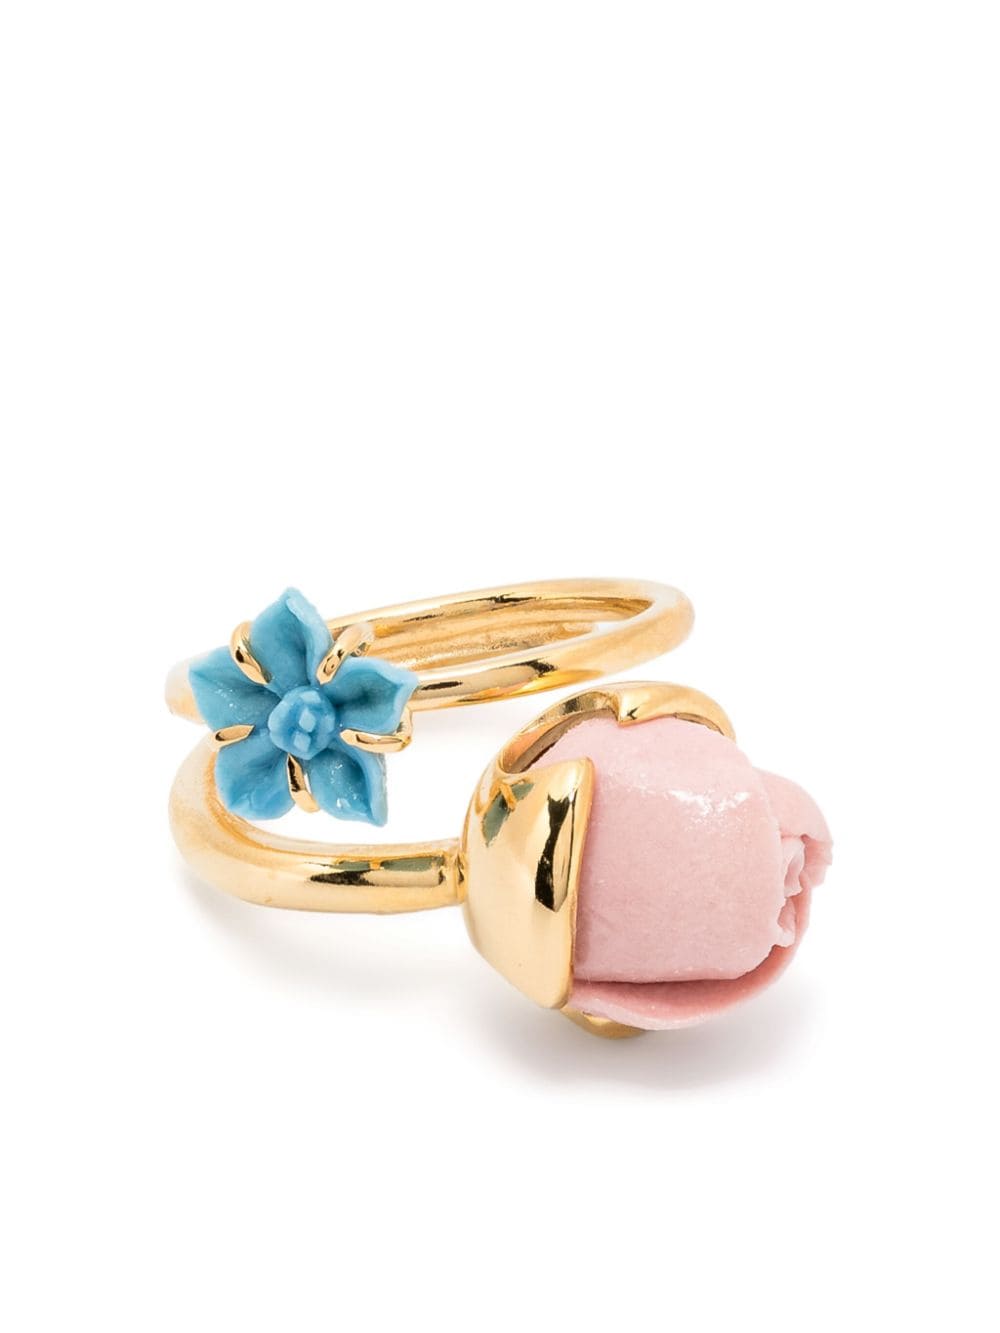 Rosebud & Petunia ring